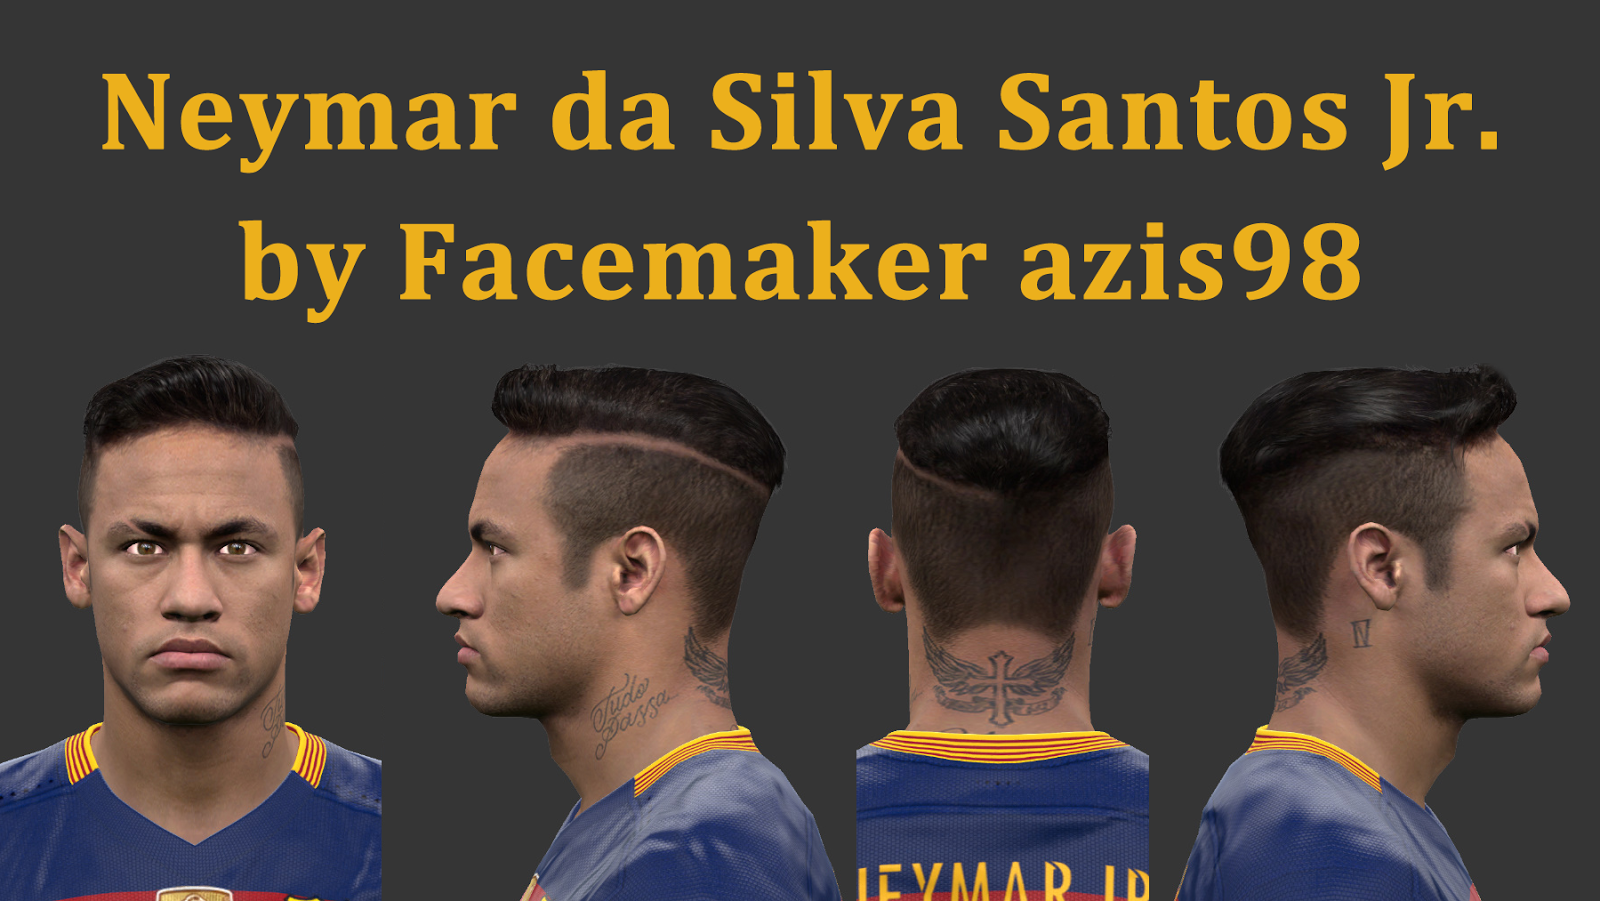 PES-MODIF: PES 2016 Neymar da Silva Santos Jr. Face by 